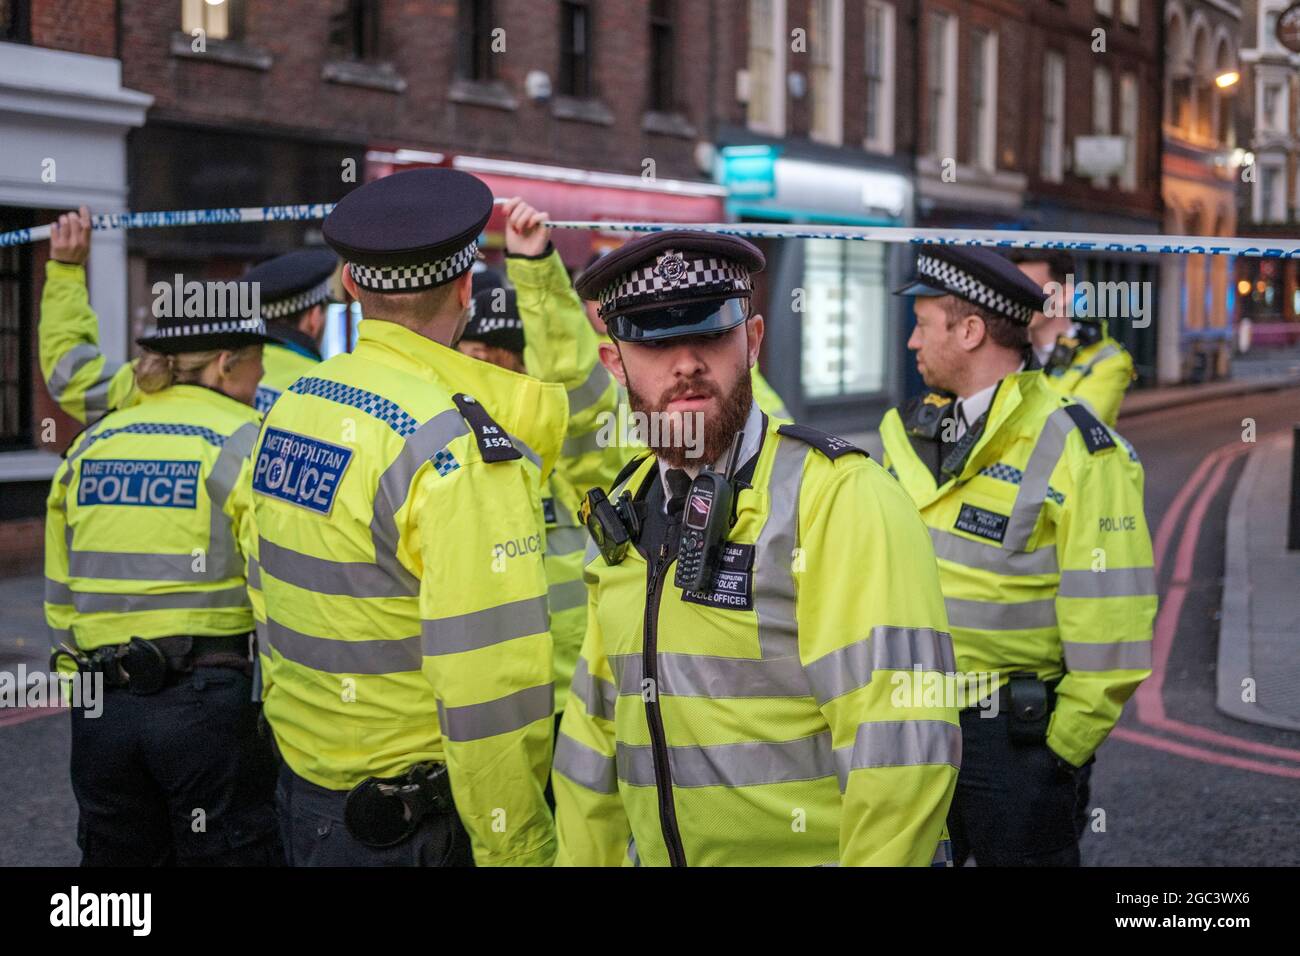 Oficiales de la Policía Metropolitana acordonando una escena de crimen, durante el ataque terrorista del Puente de Londres en 29 de novemebbr 2019, Londres, Inglaterra Foto de stock